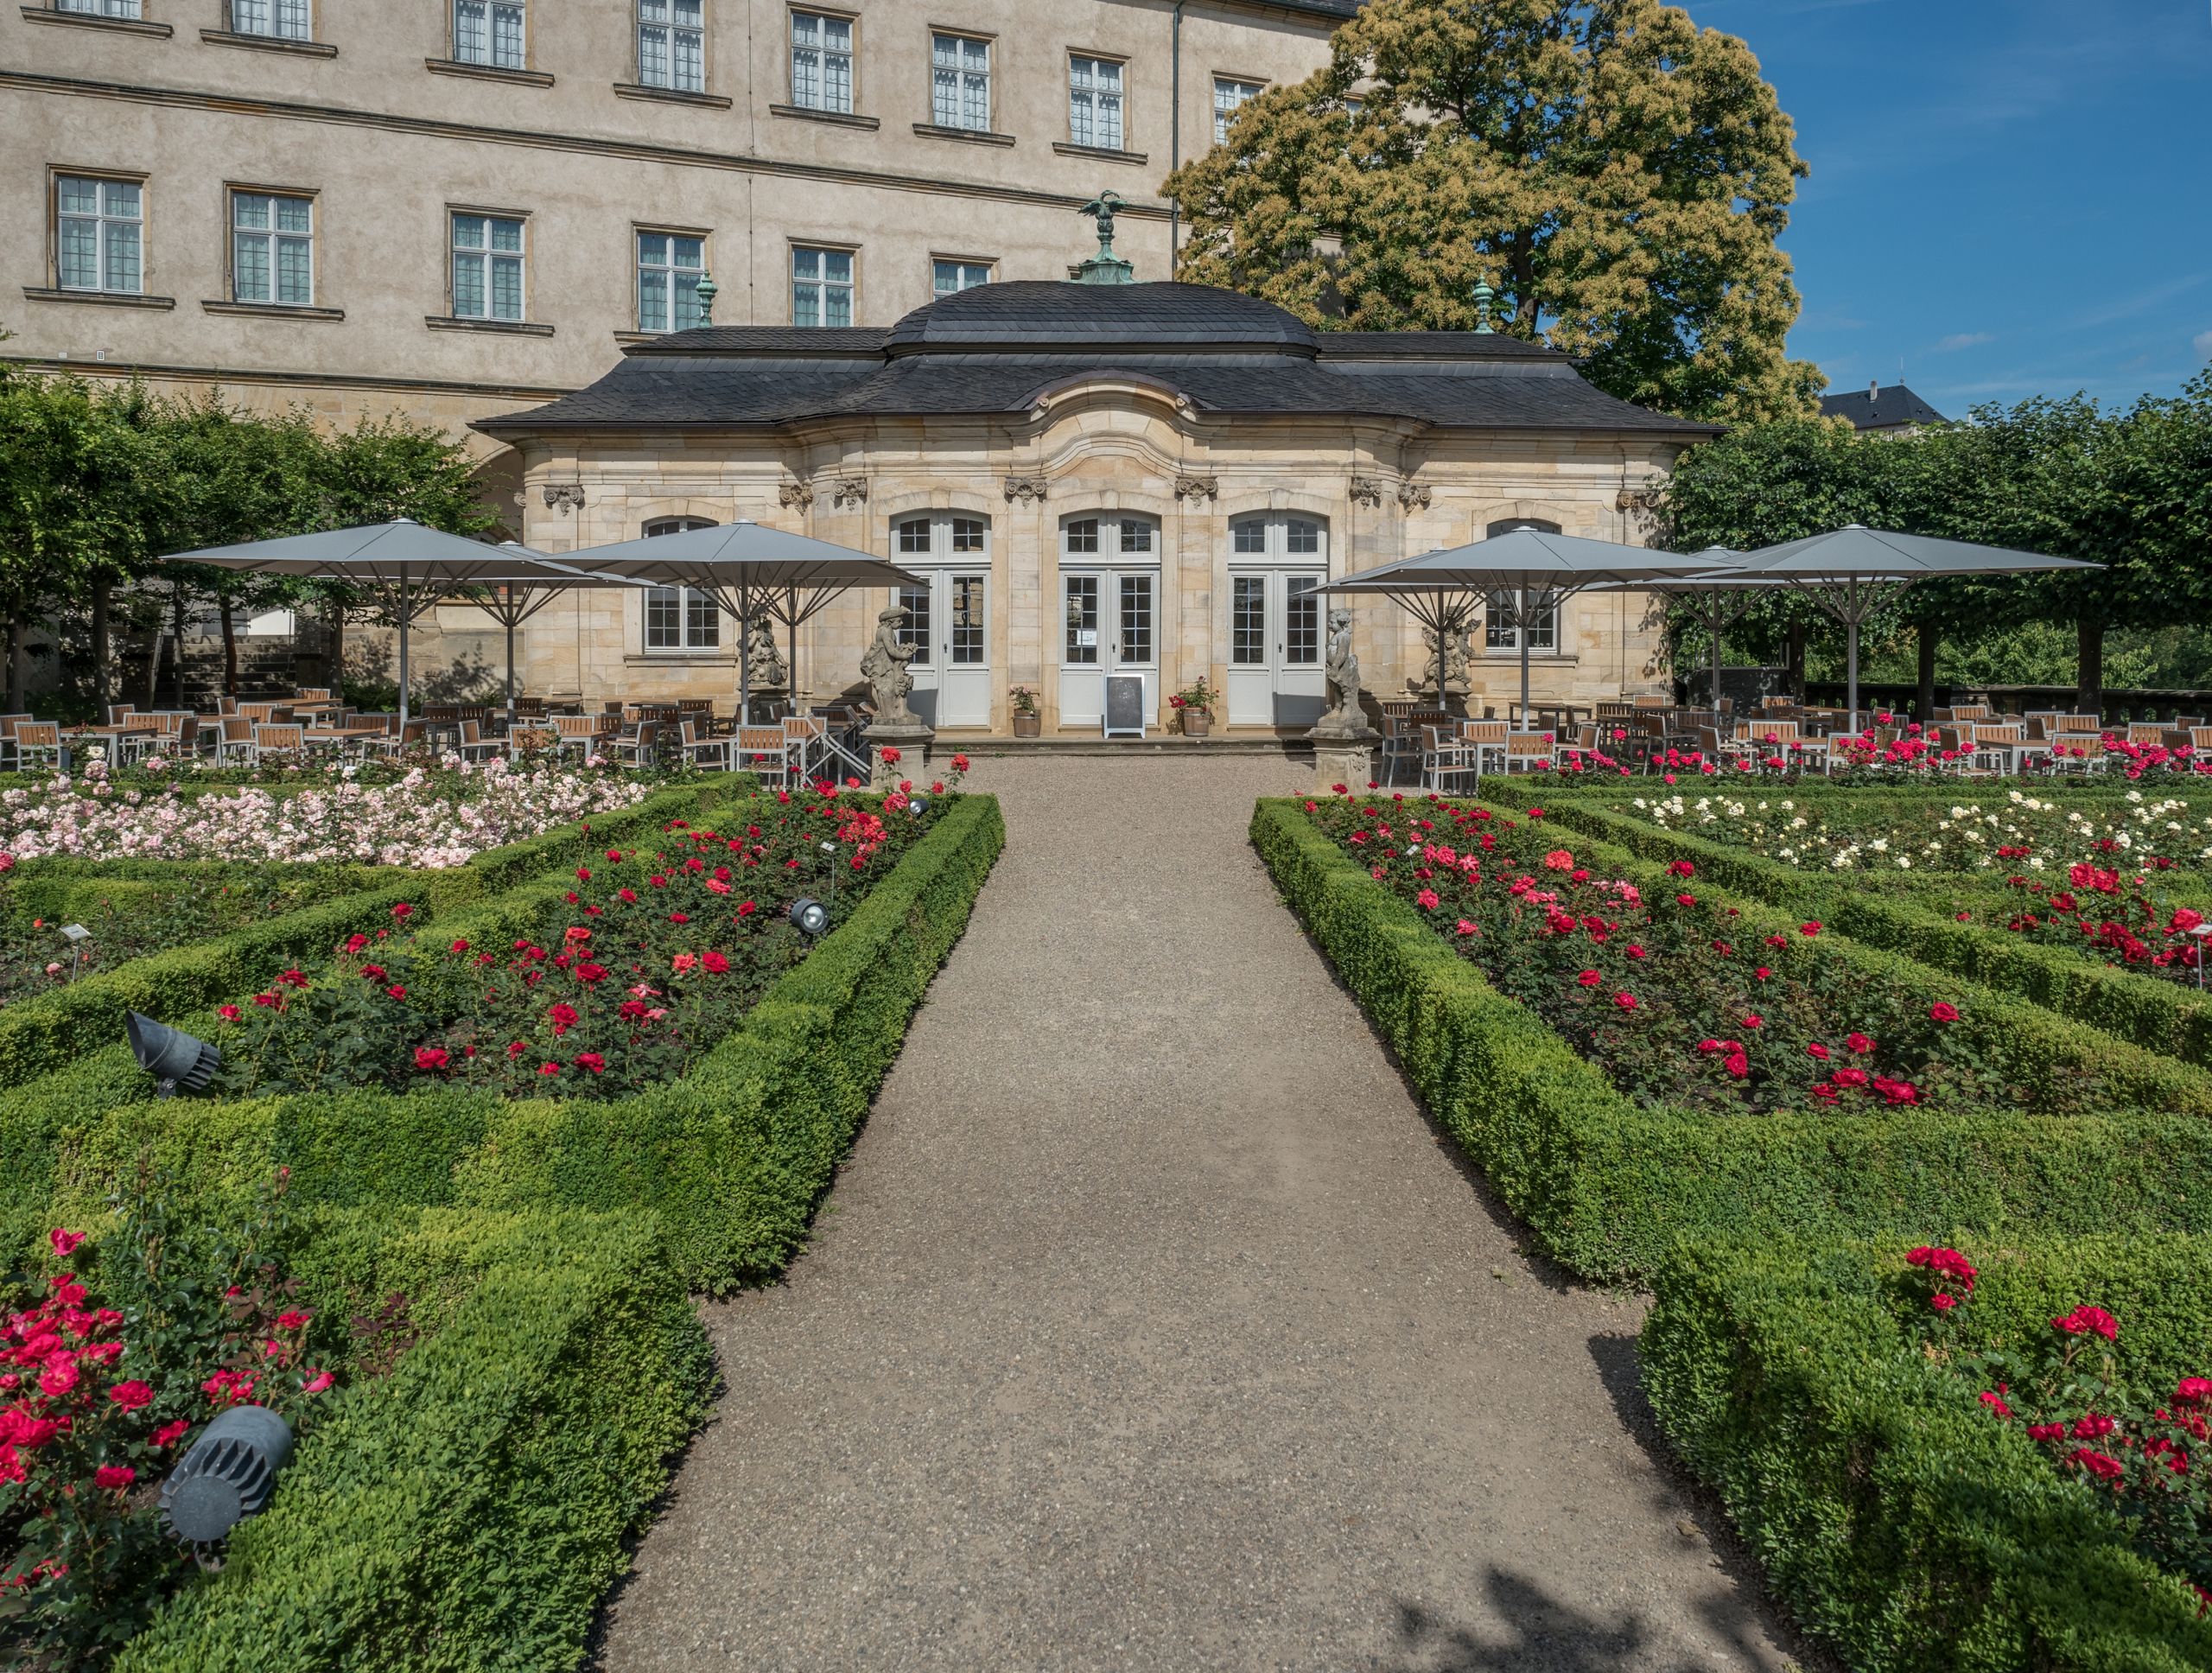 Garten Pavilion Elegant File Rosengarten Bamberg 5 Wikimedia Mons